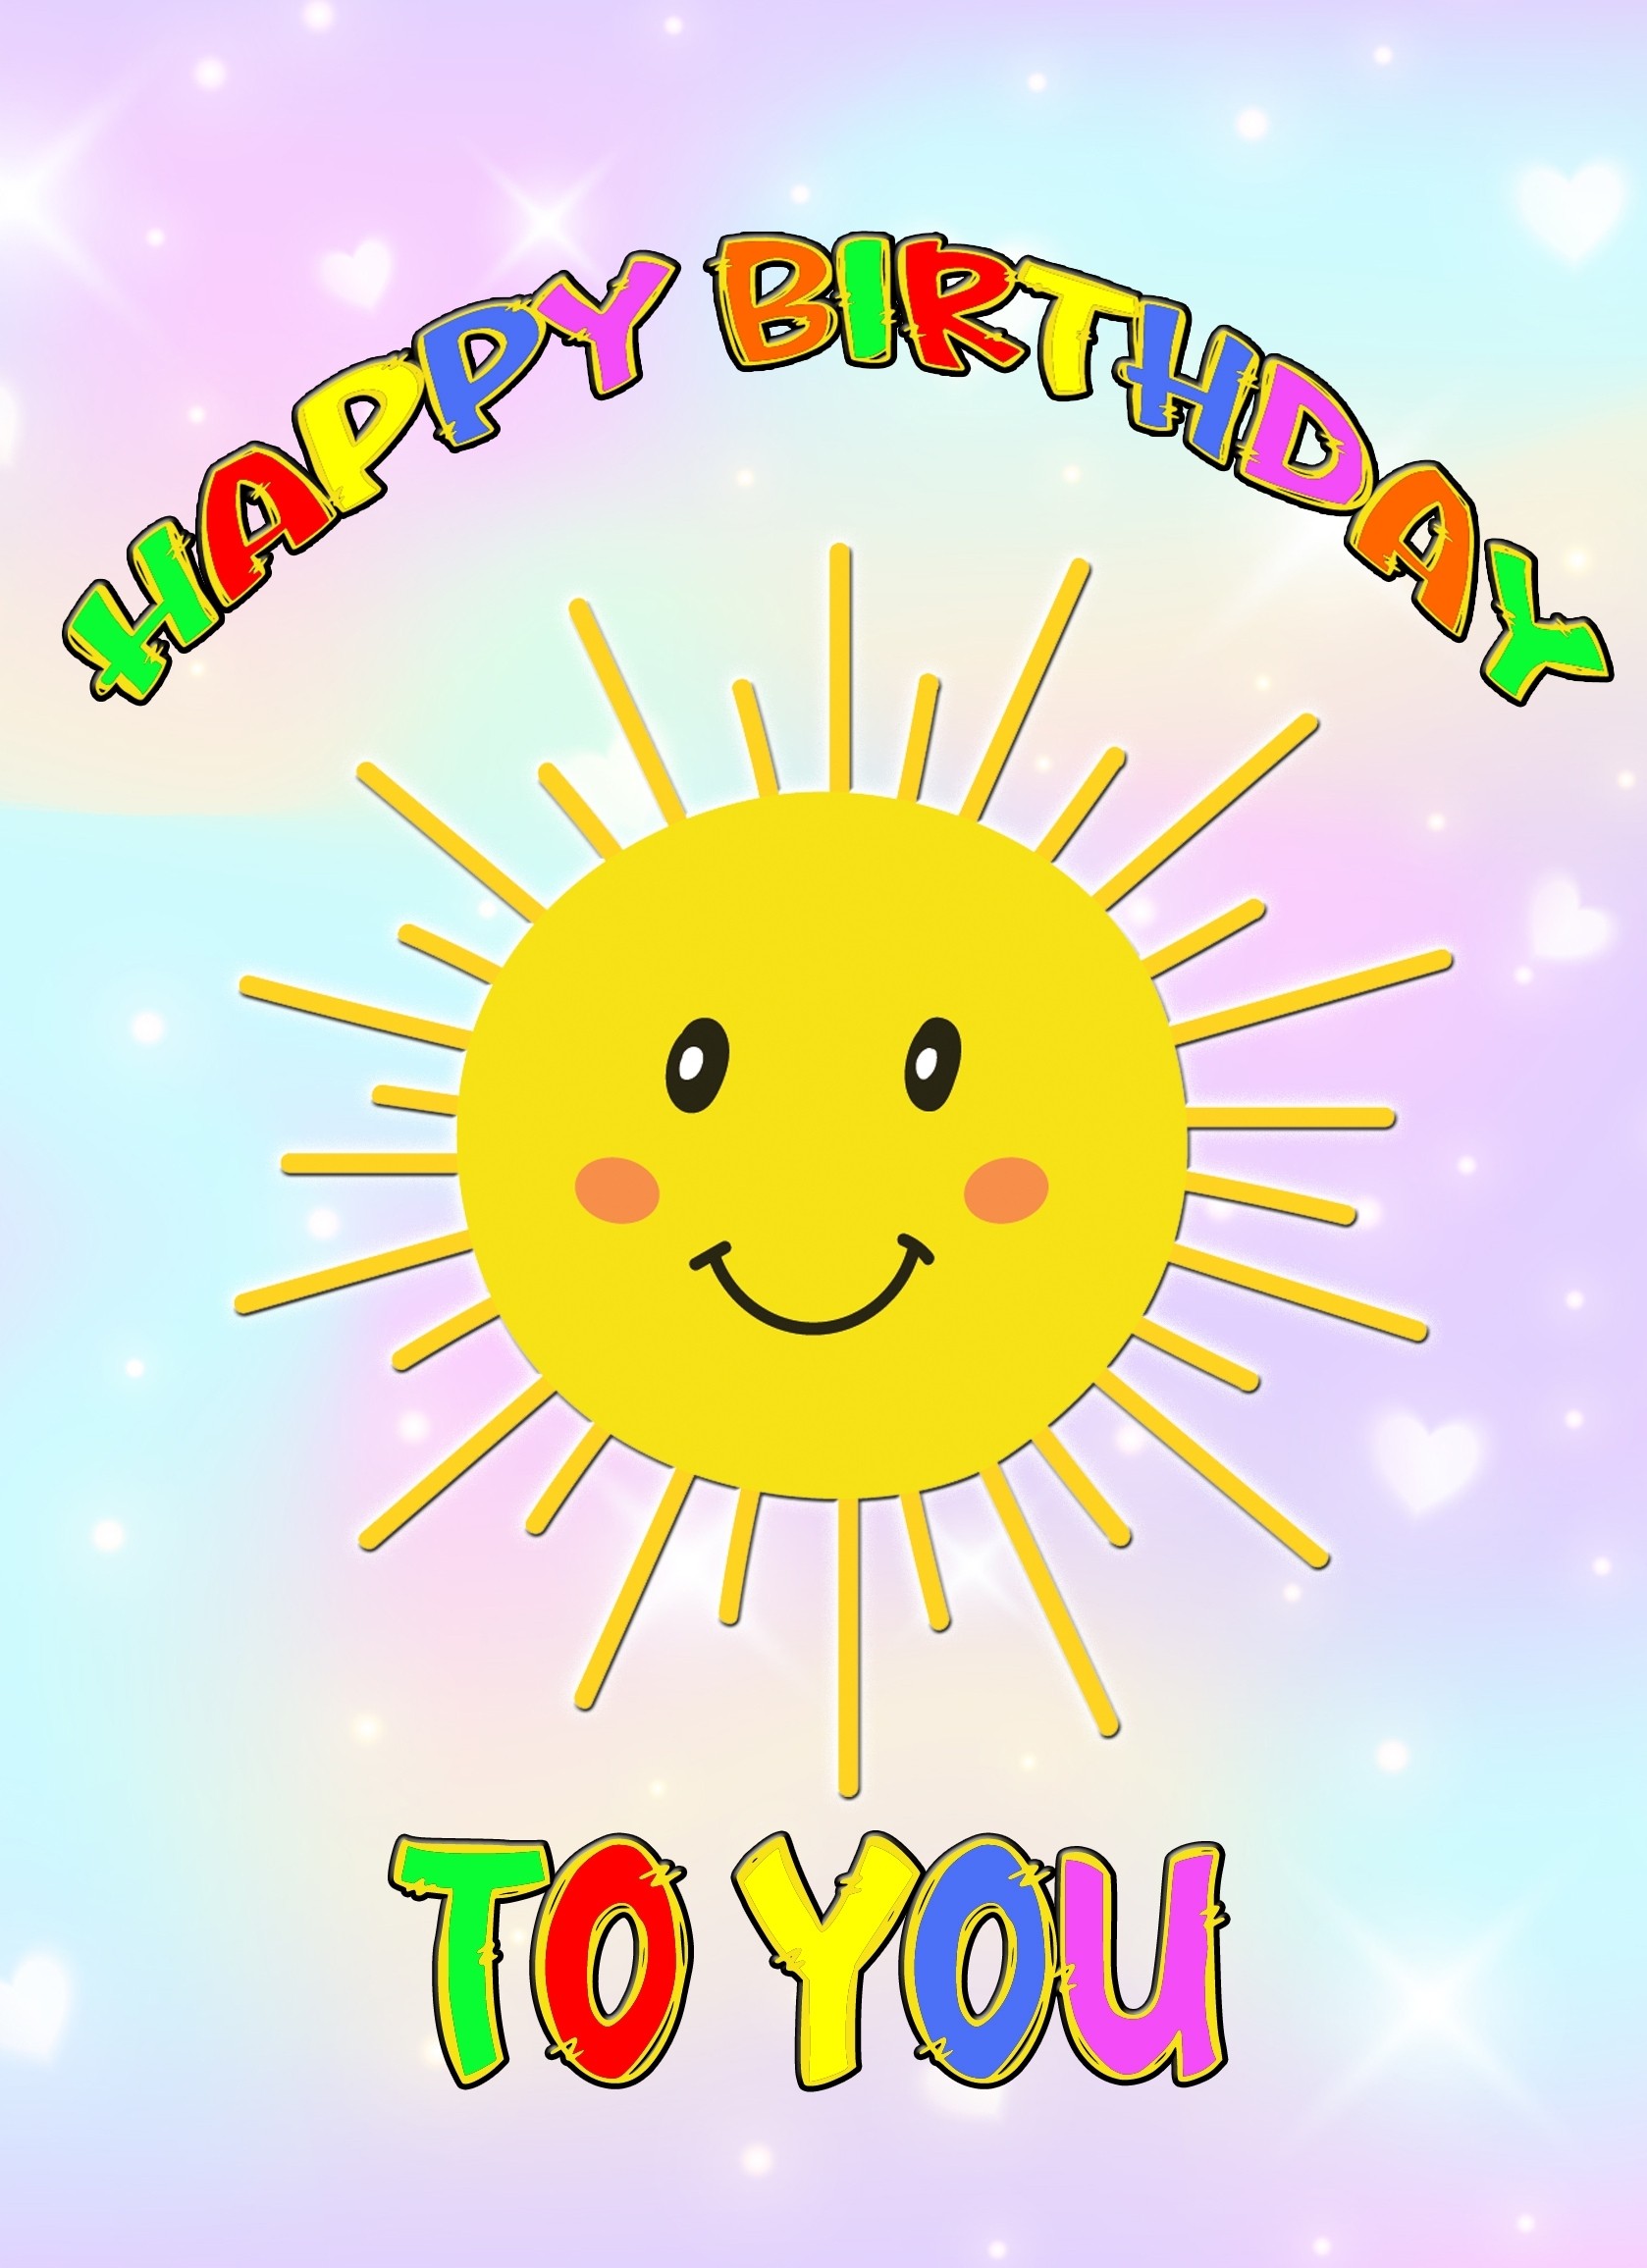 Happy Birthday Greeting Card (Sun)